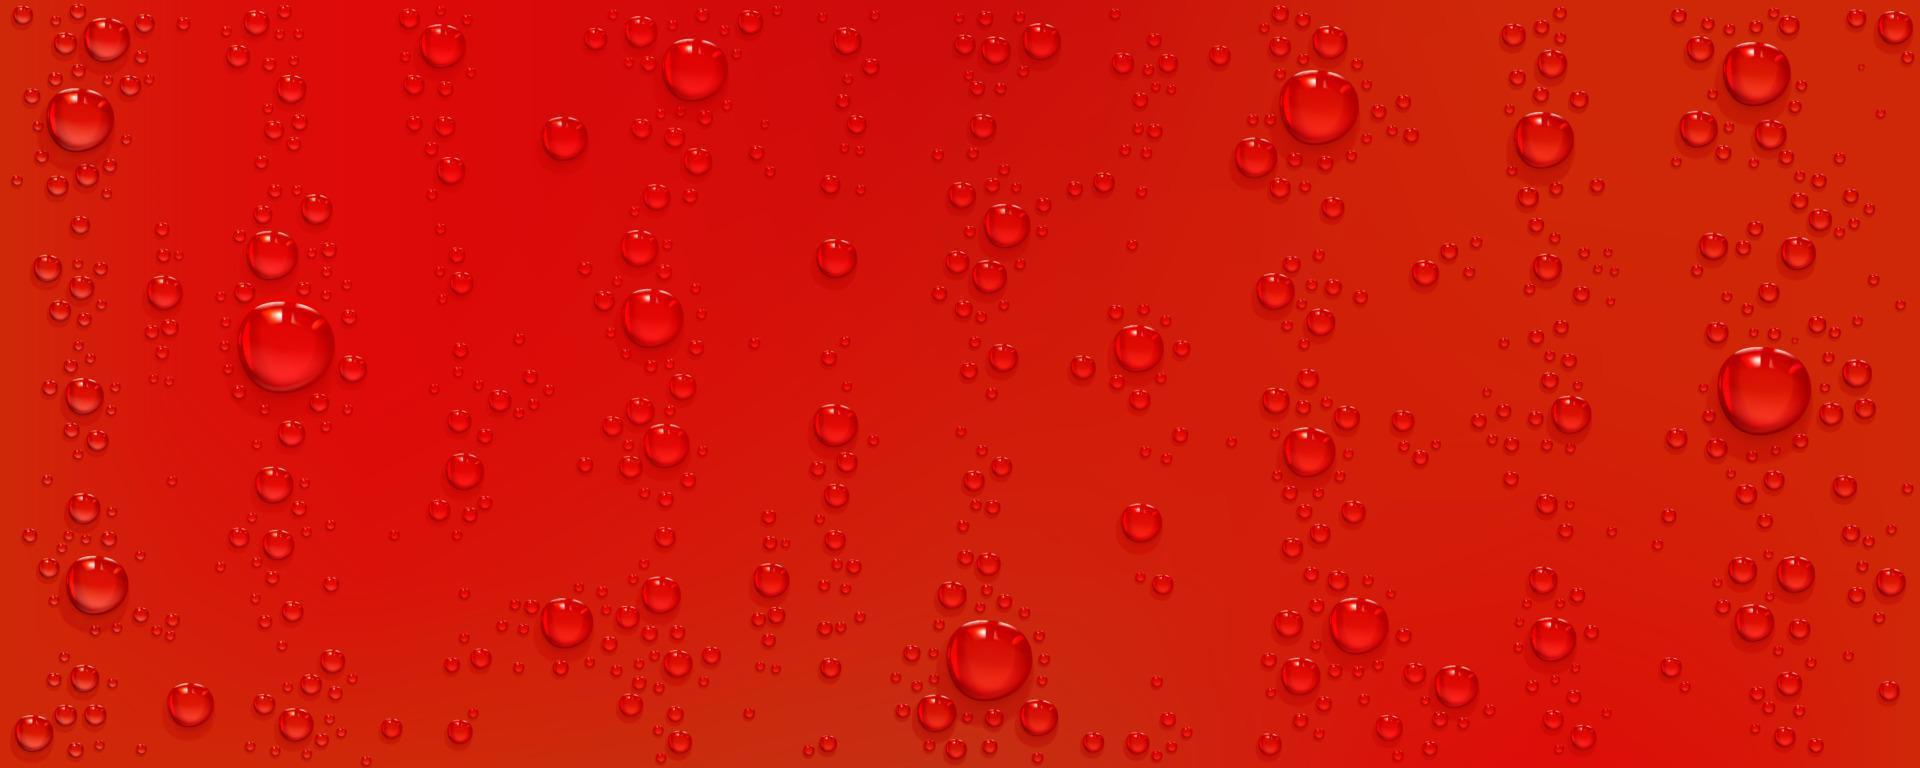 gotas de água sobre fundo vermelho, bolhas realistas vetor